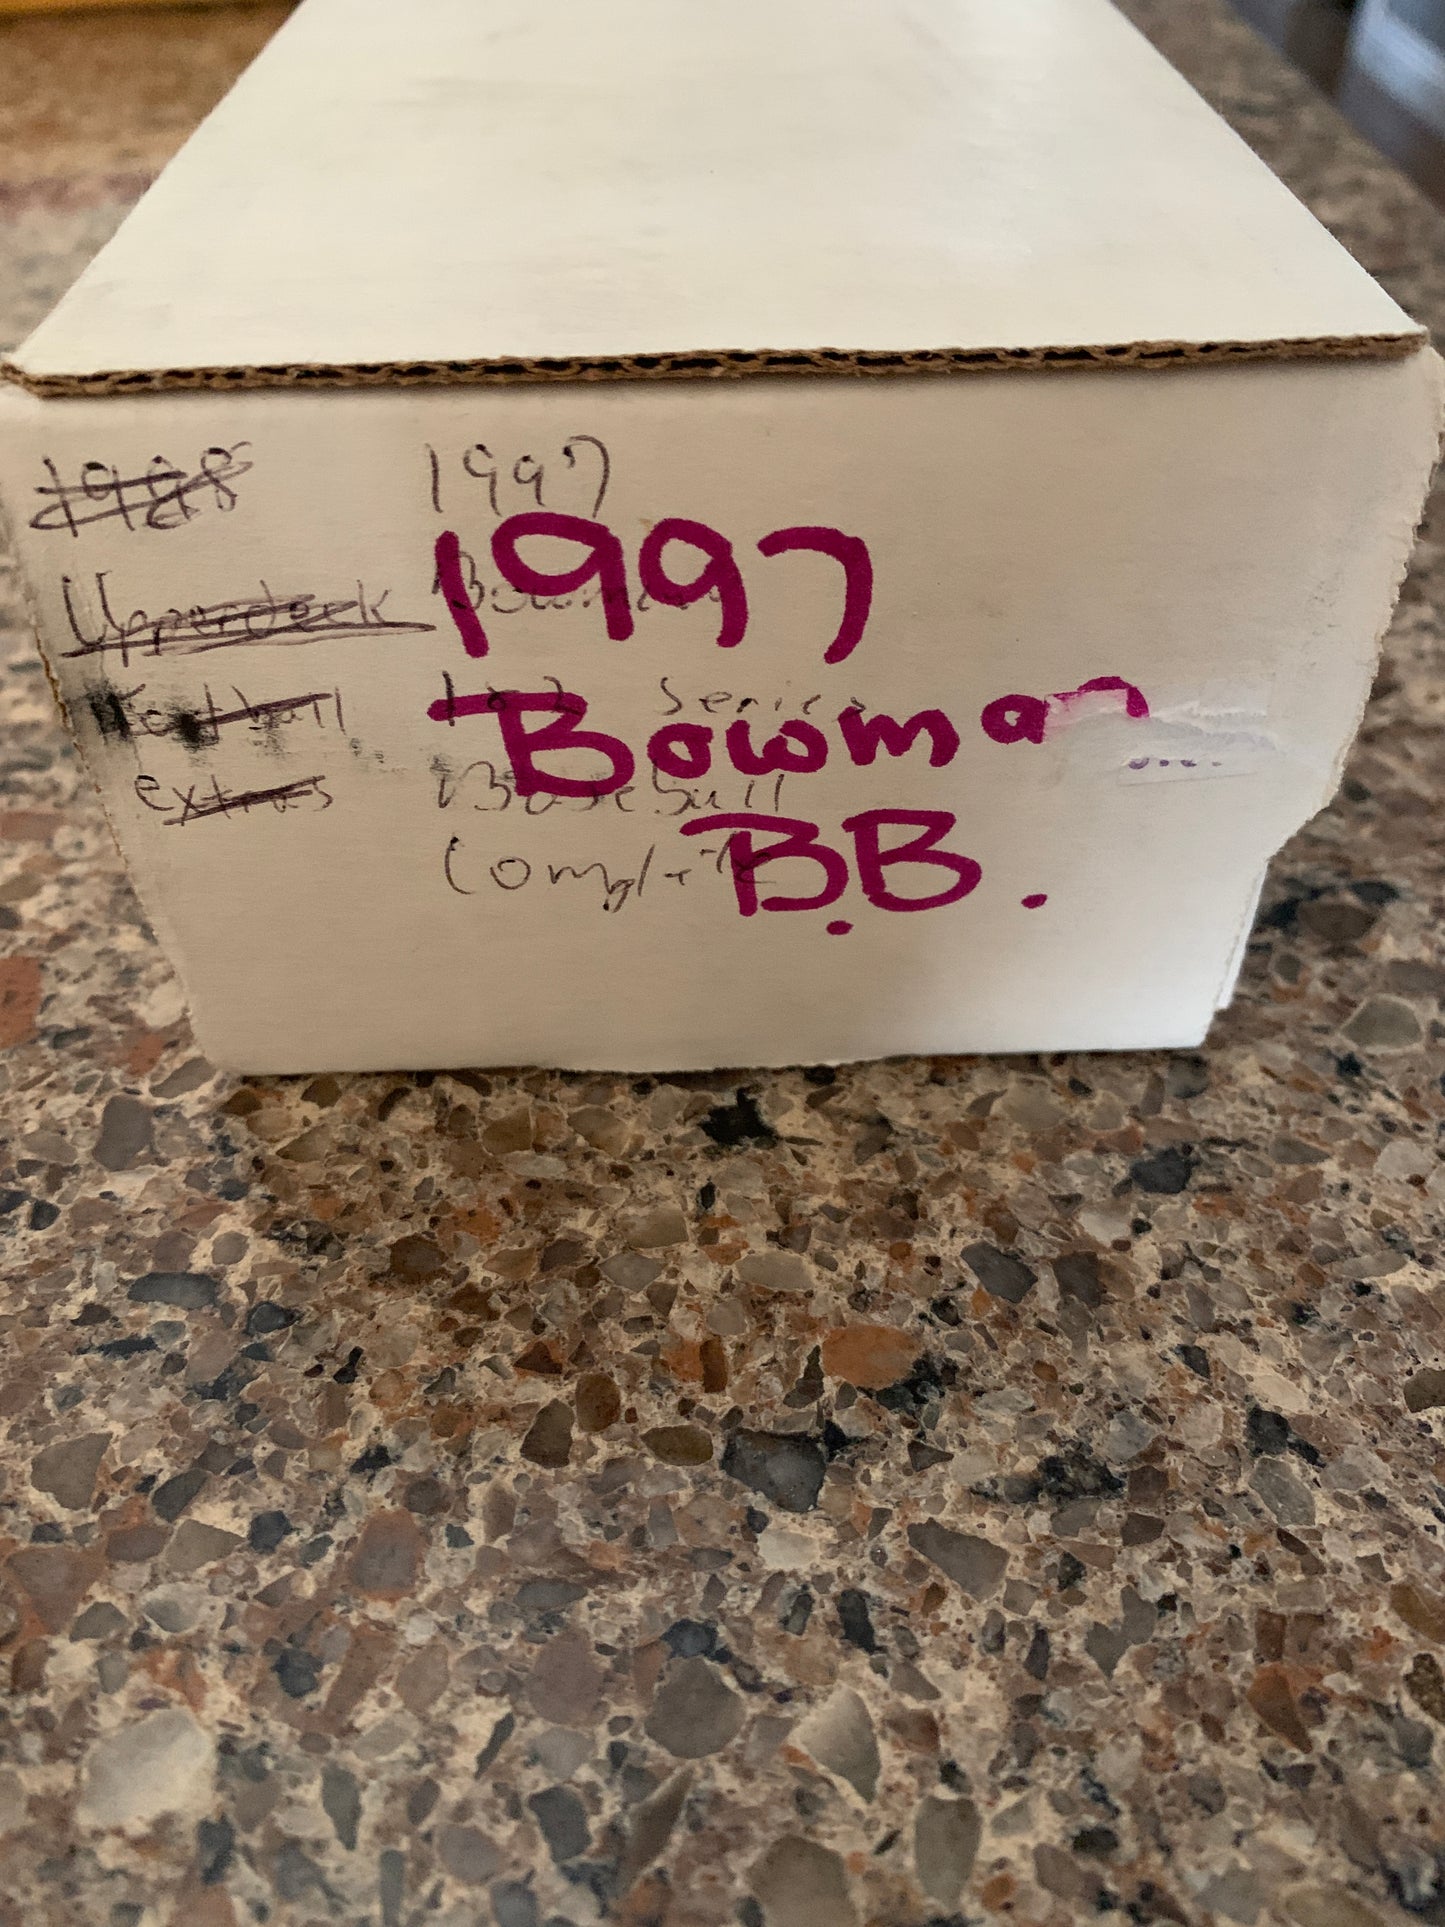 1997 Bowman Baseball Complete Set 1-445